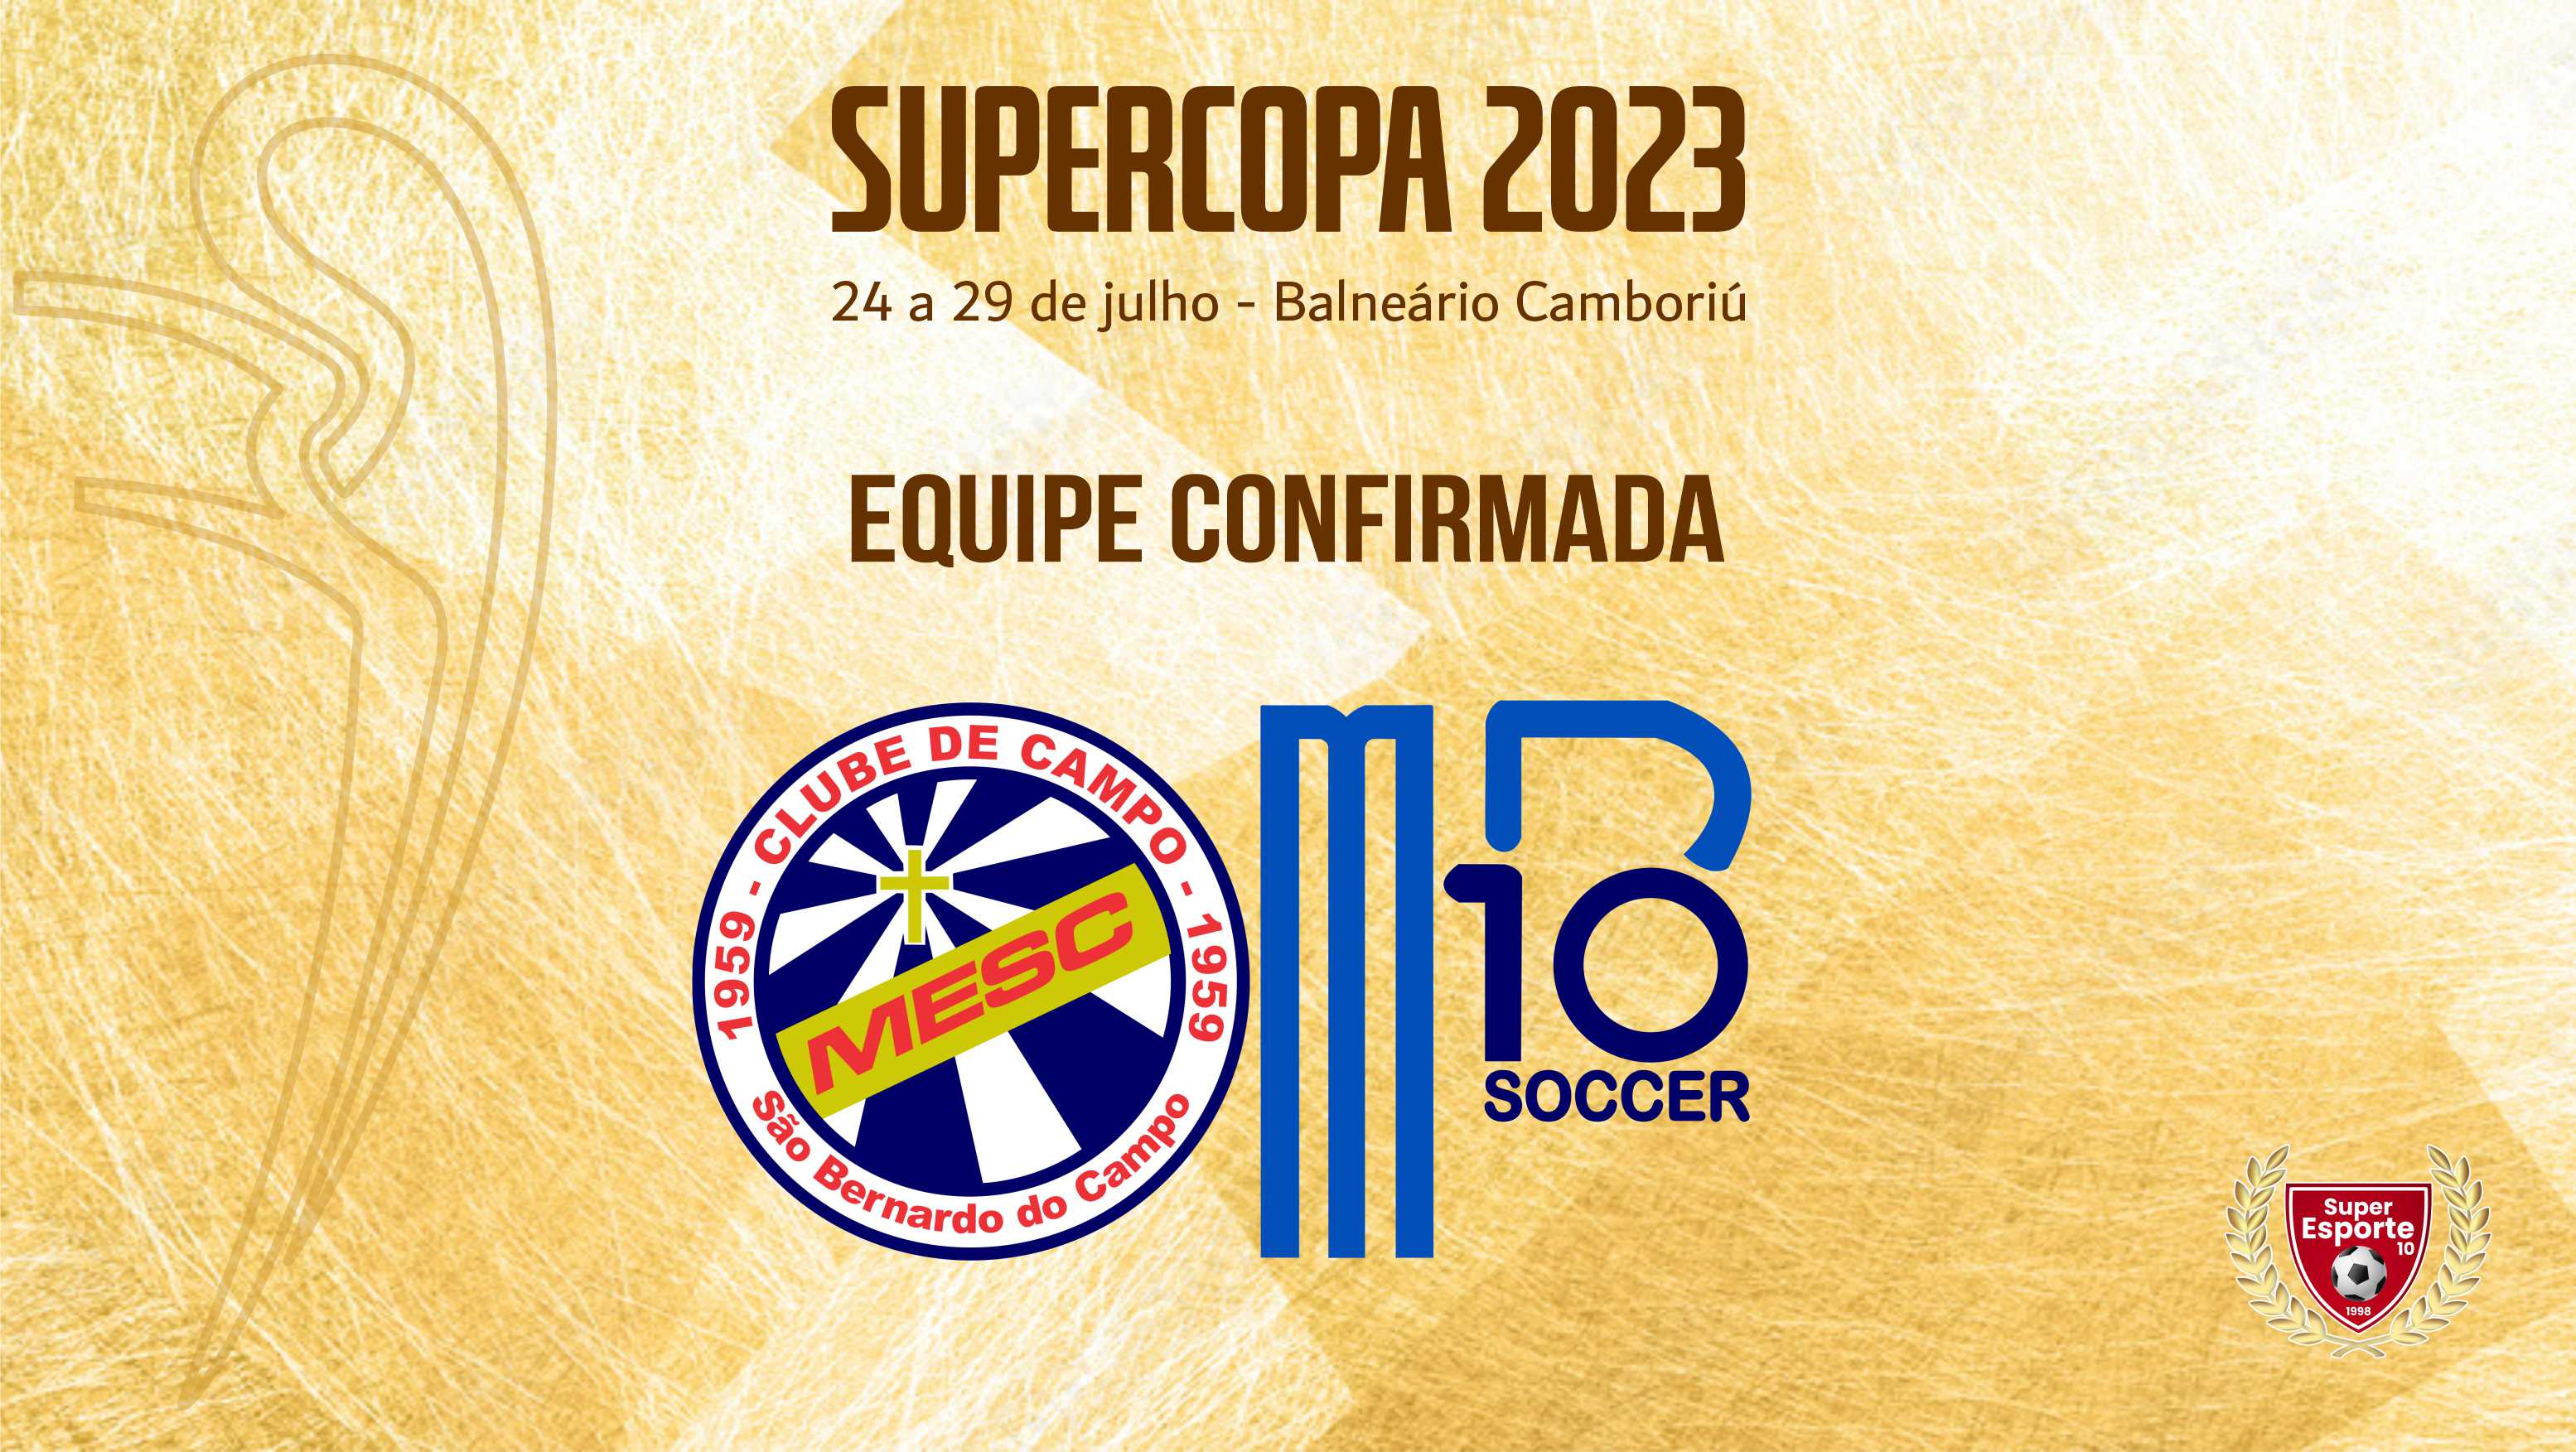 MESC/MB10 Soccer estreia na Supercopa